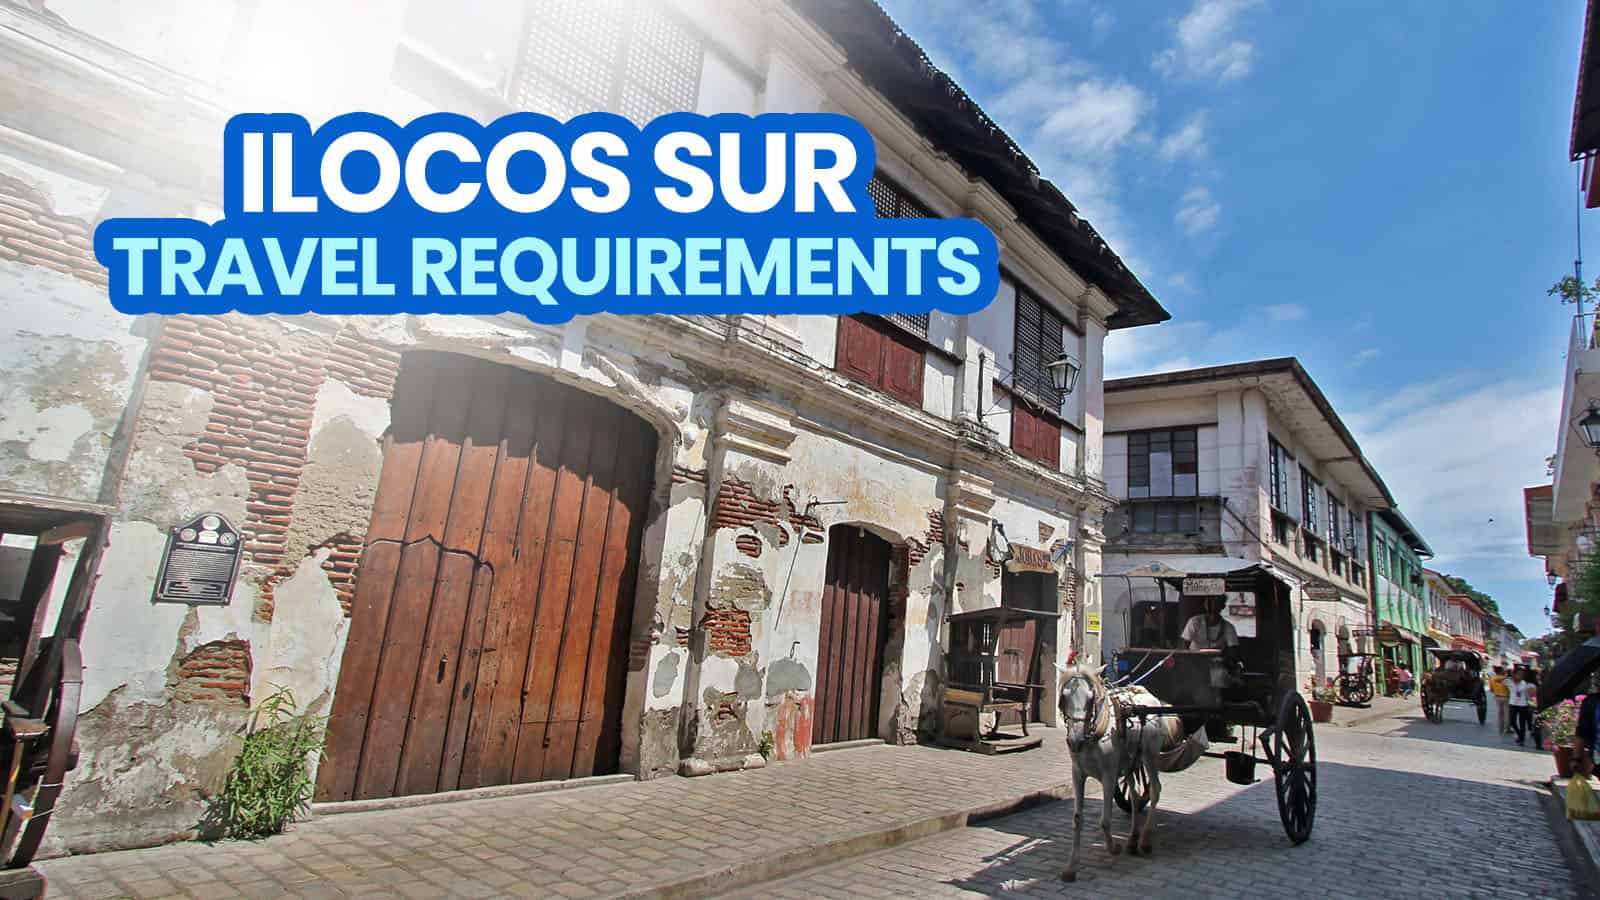 ILOCOS SUR Travel Requirements for Tourists